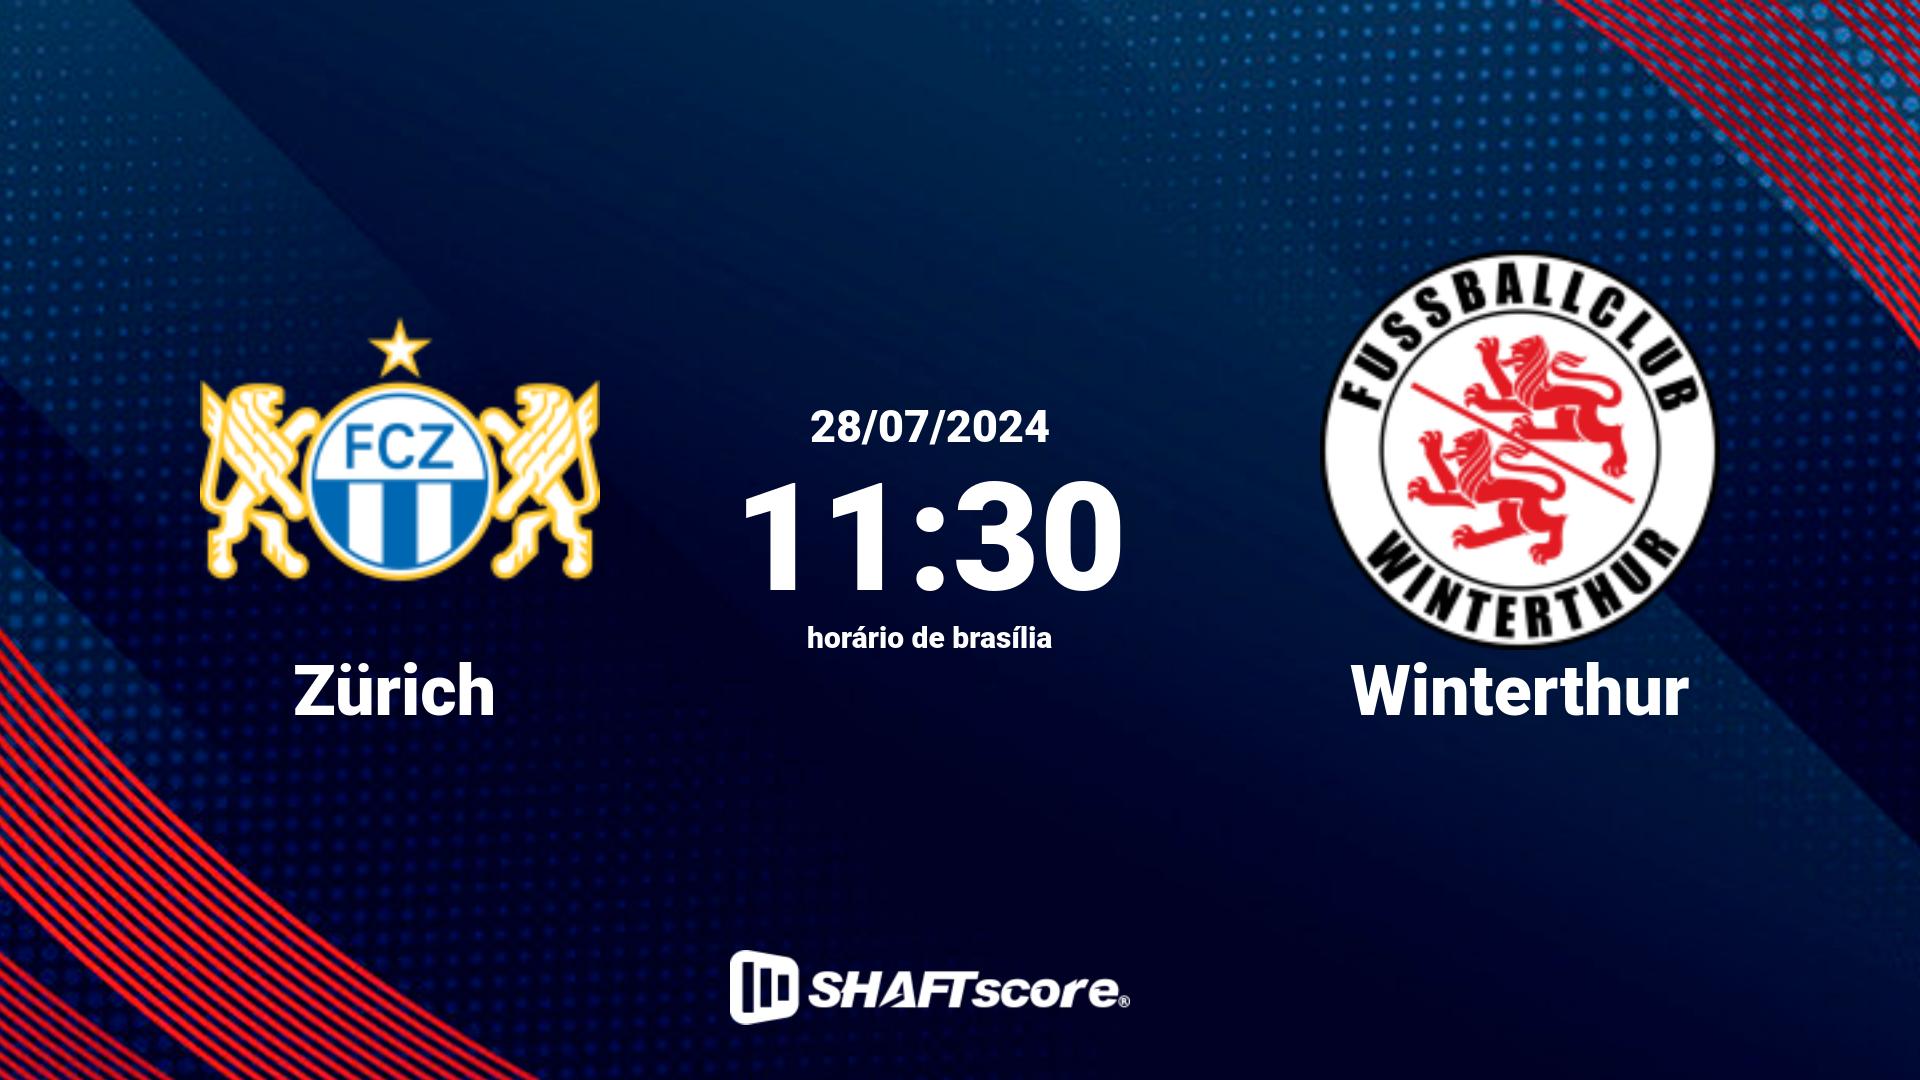 Estatísticas do jogo Zürich vs Winterthur 28.07 11:30